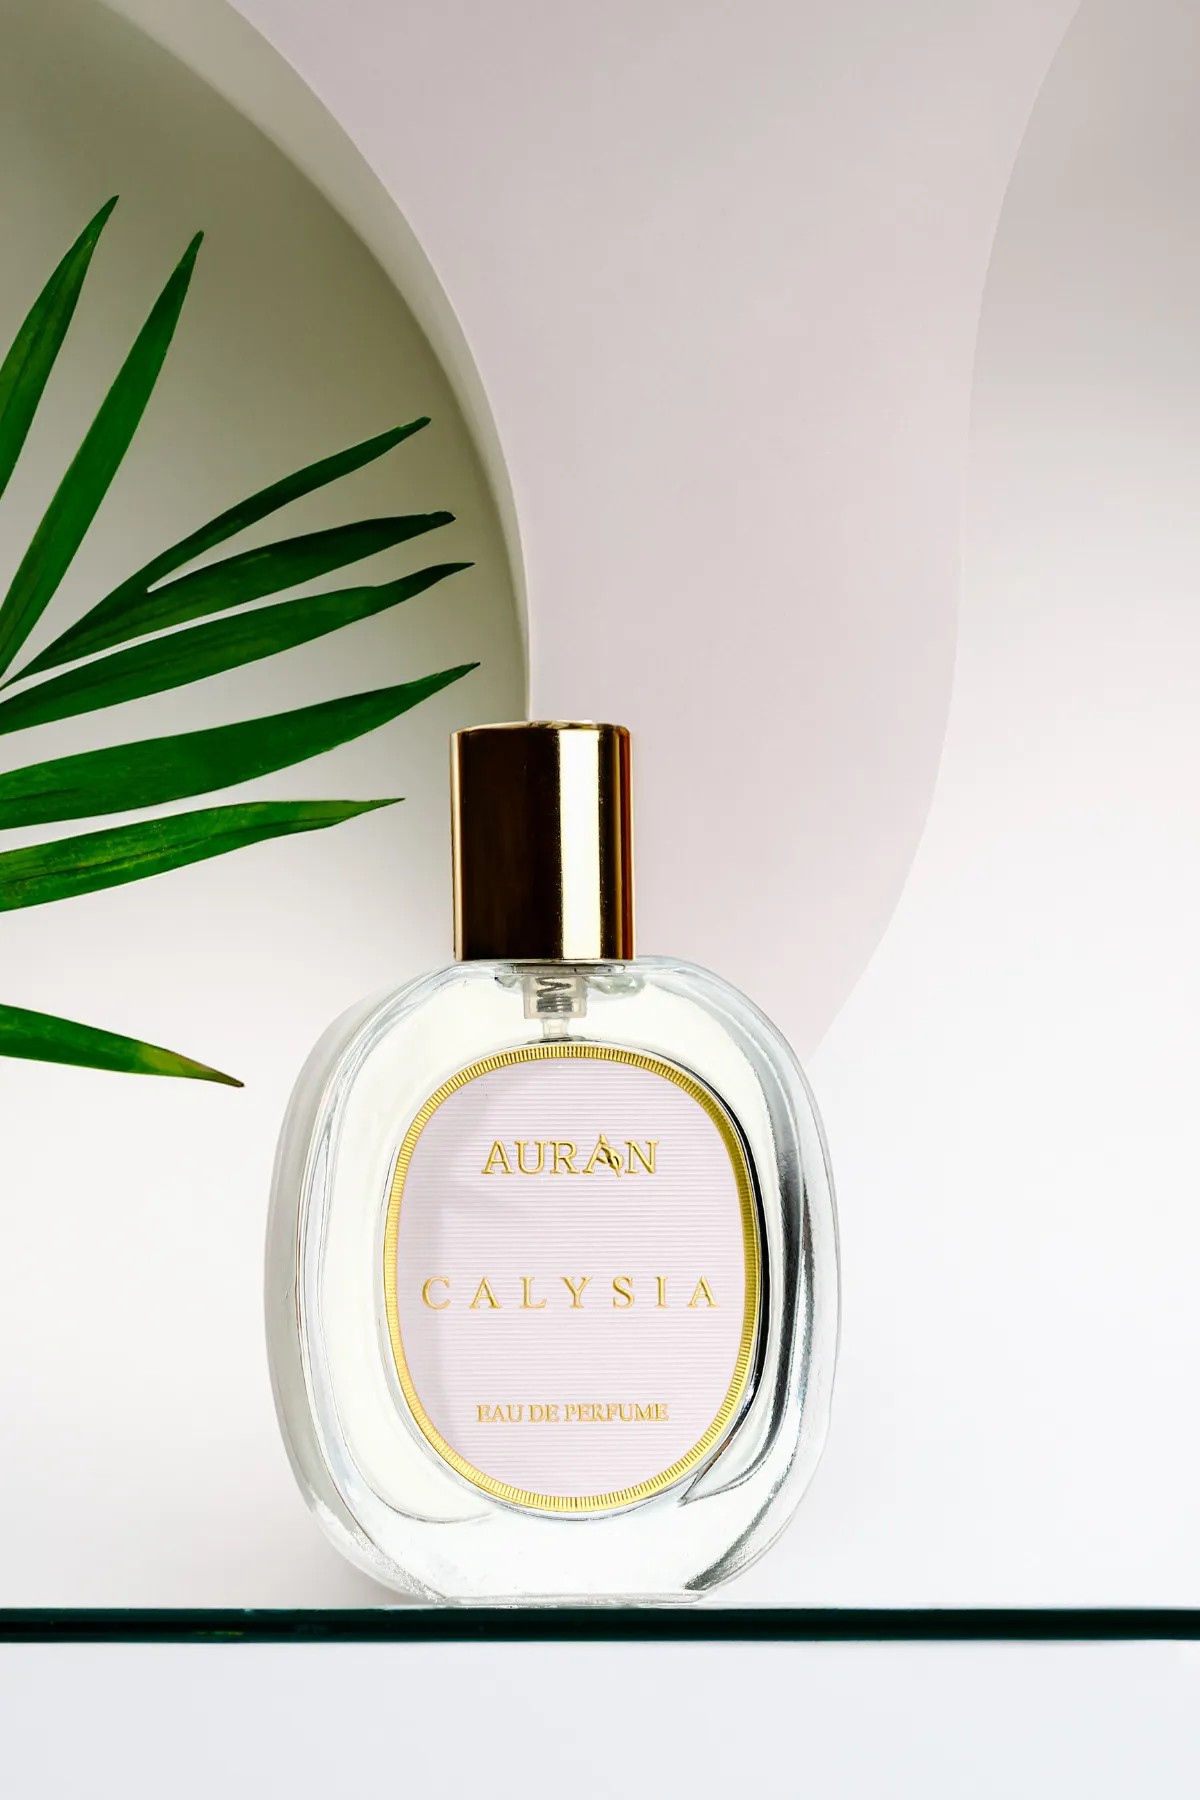 Calysia Kadın Edp Parfüm Çiçeksi Woman Eau De Perfume Floral 50ml